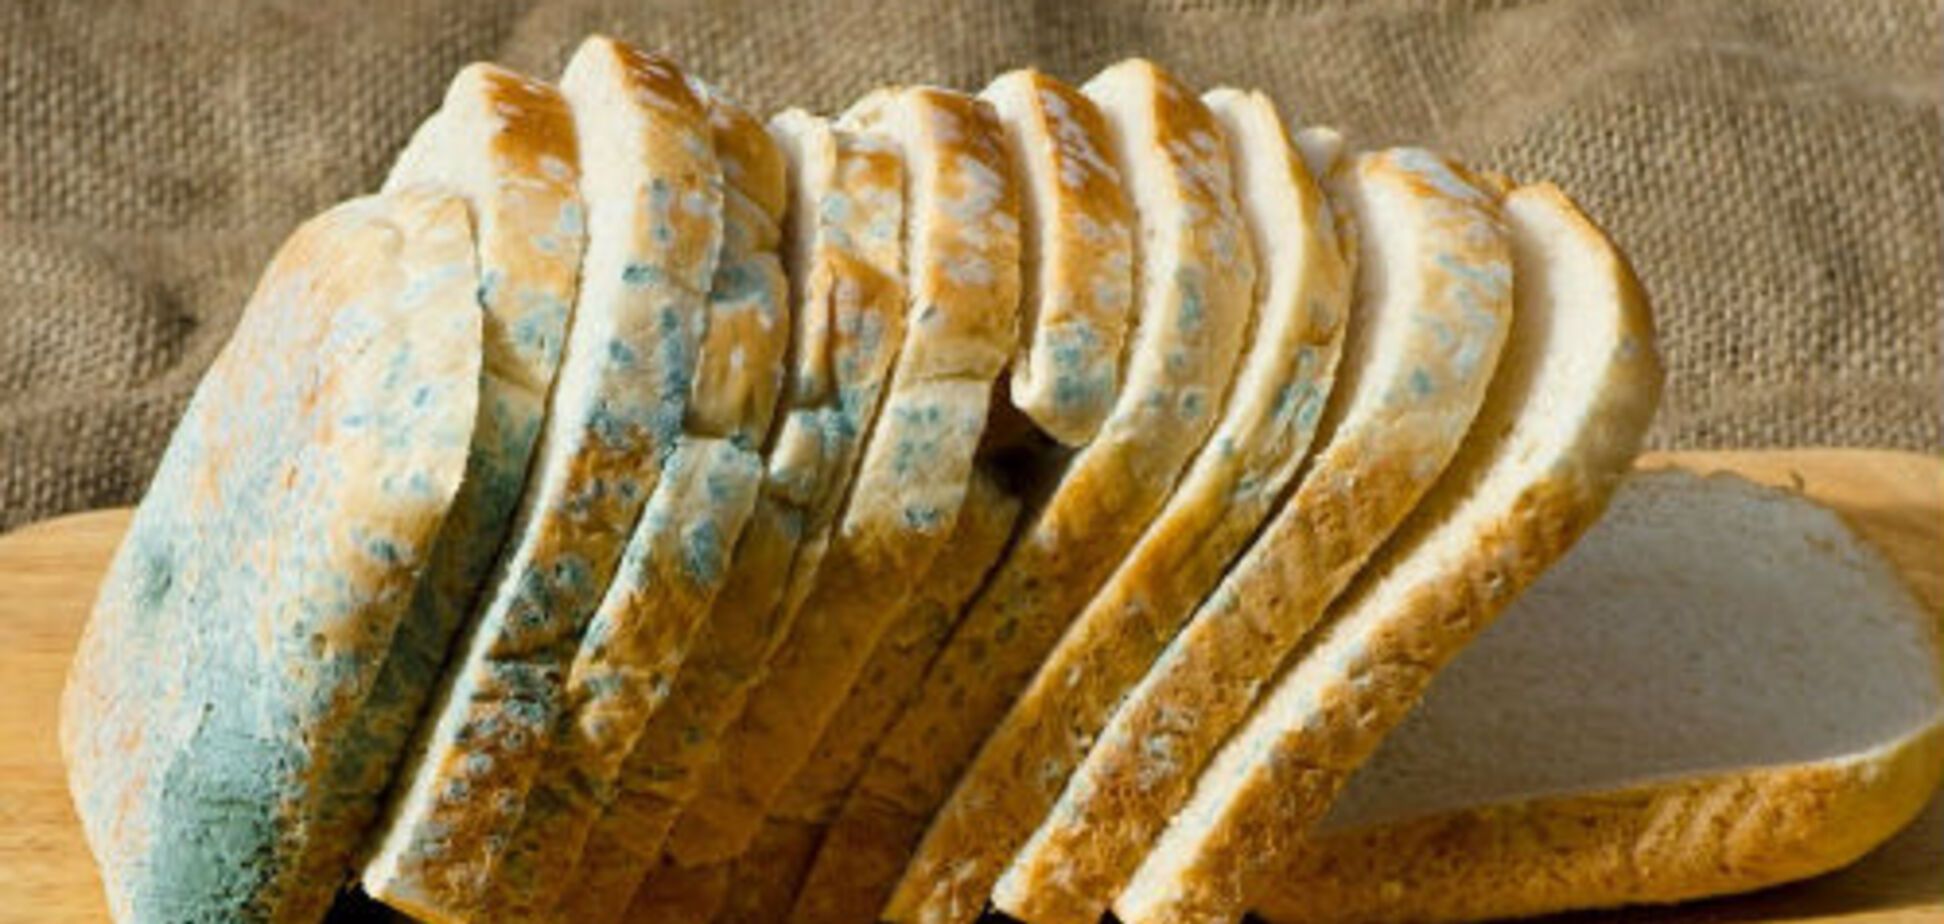 Хлеб с плесенью: ученые рассказали, можно ли его обрезать и есть